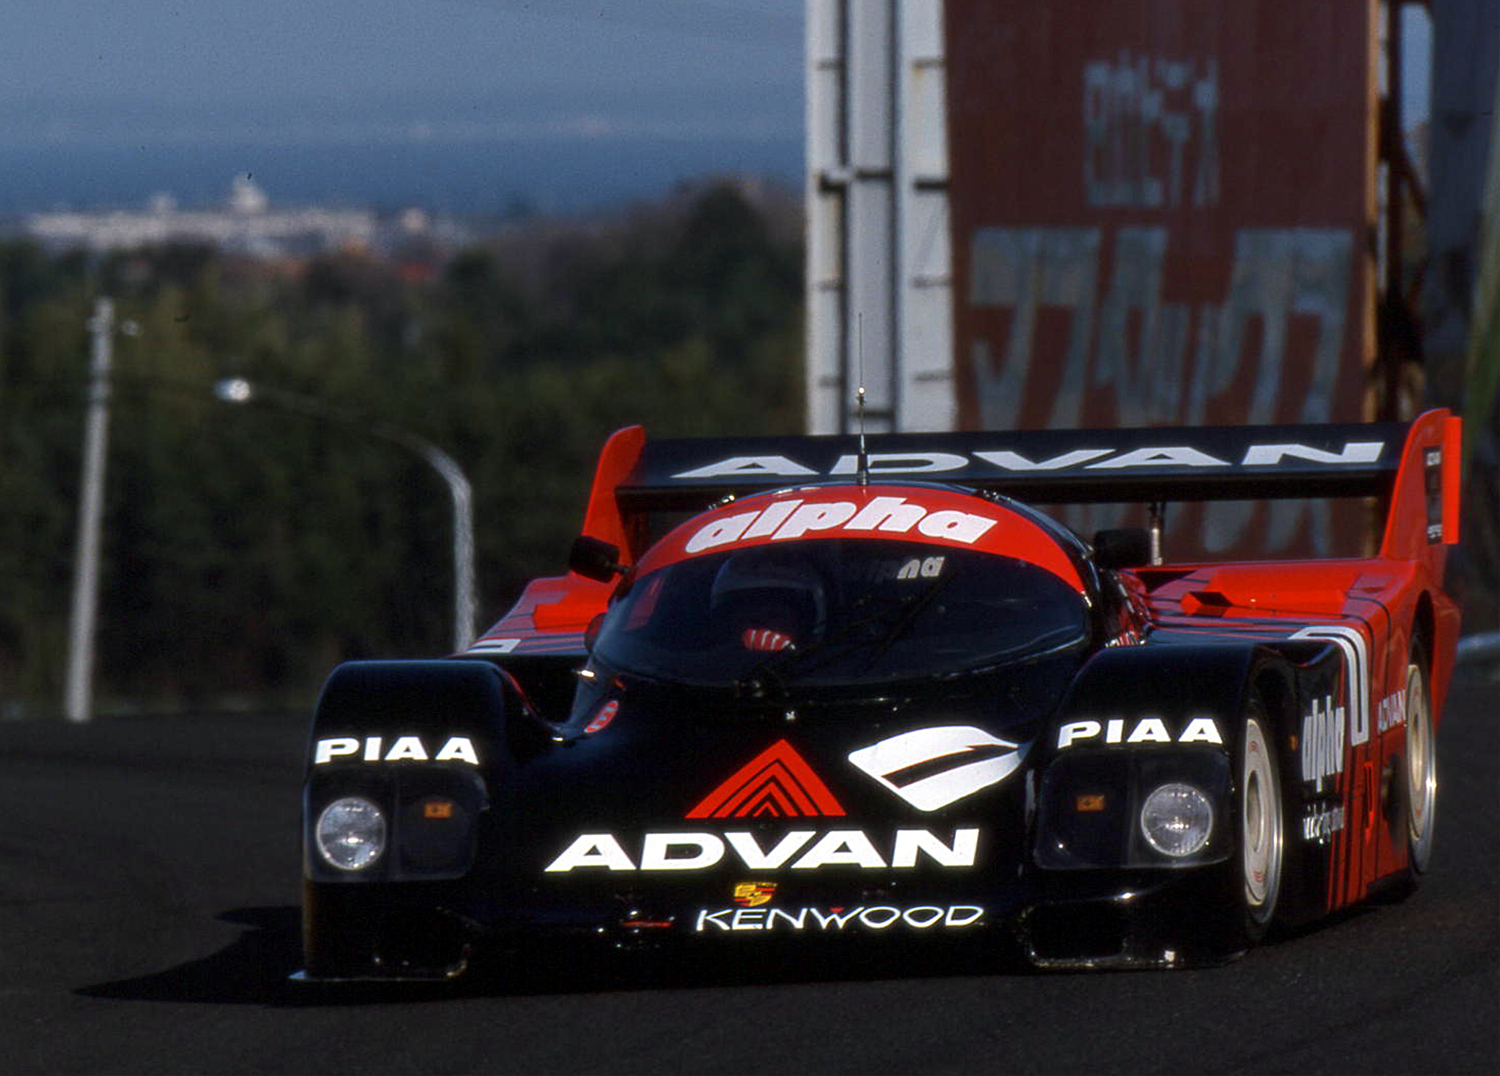 その速さとカラーリングに憧れた印象深い「ADVAN」カラーのレースマシン 〜 画像15